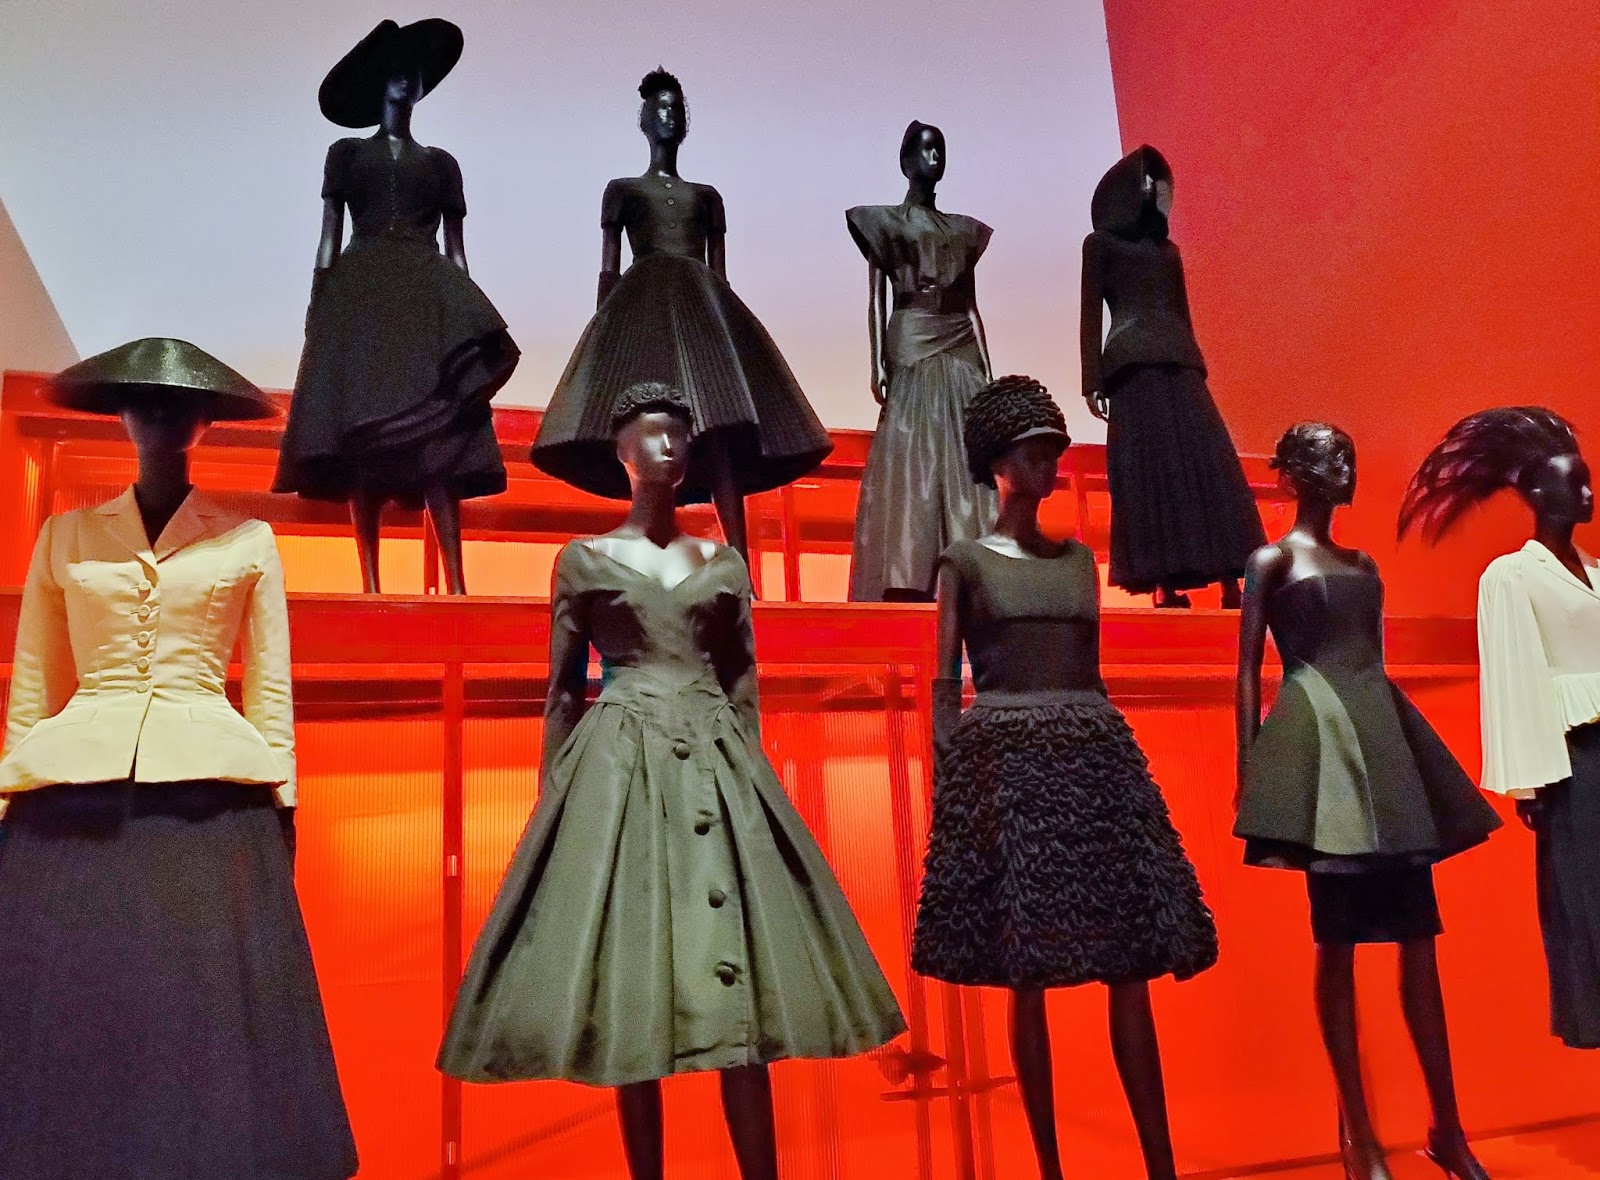 Designer John Galliano's eccentric outfit courts controversy